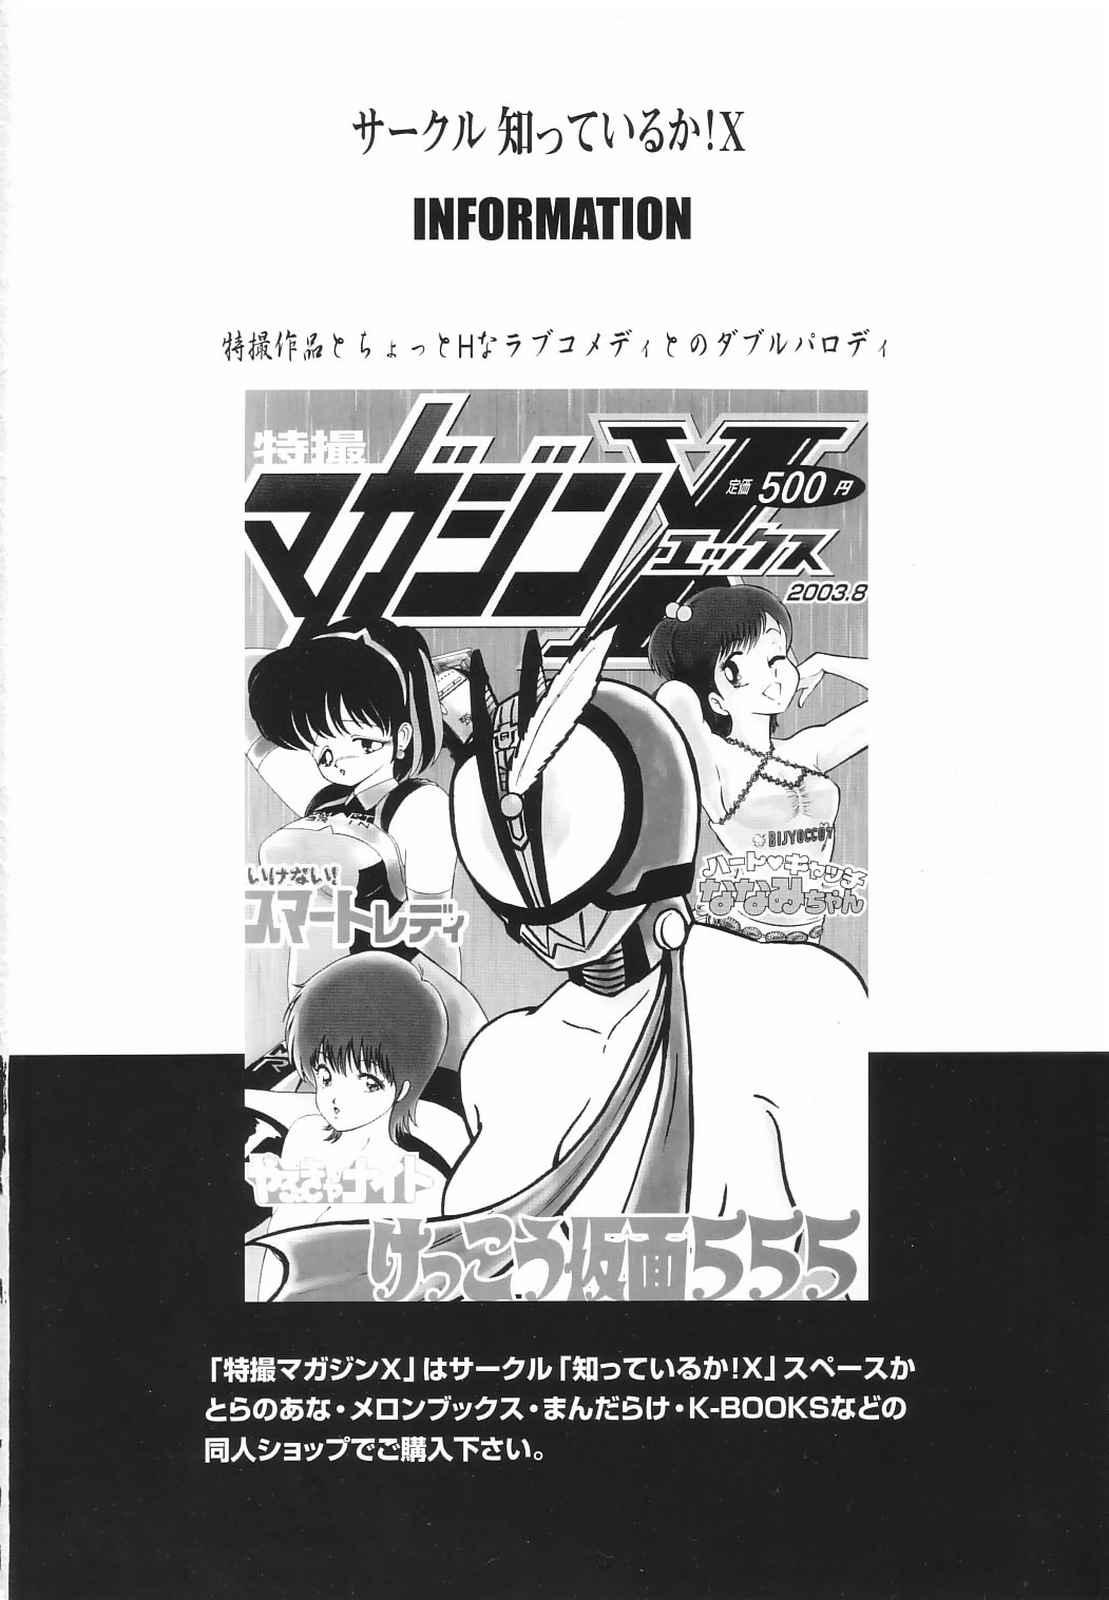 Amatures Gone Wild Tokusatsu Magazine x 2003 Fuyu Gou - Sailor moon Ichigo 100 Speculum - Page 2